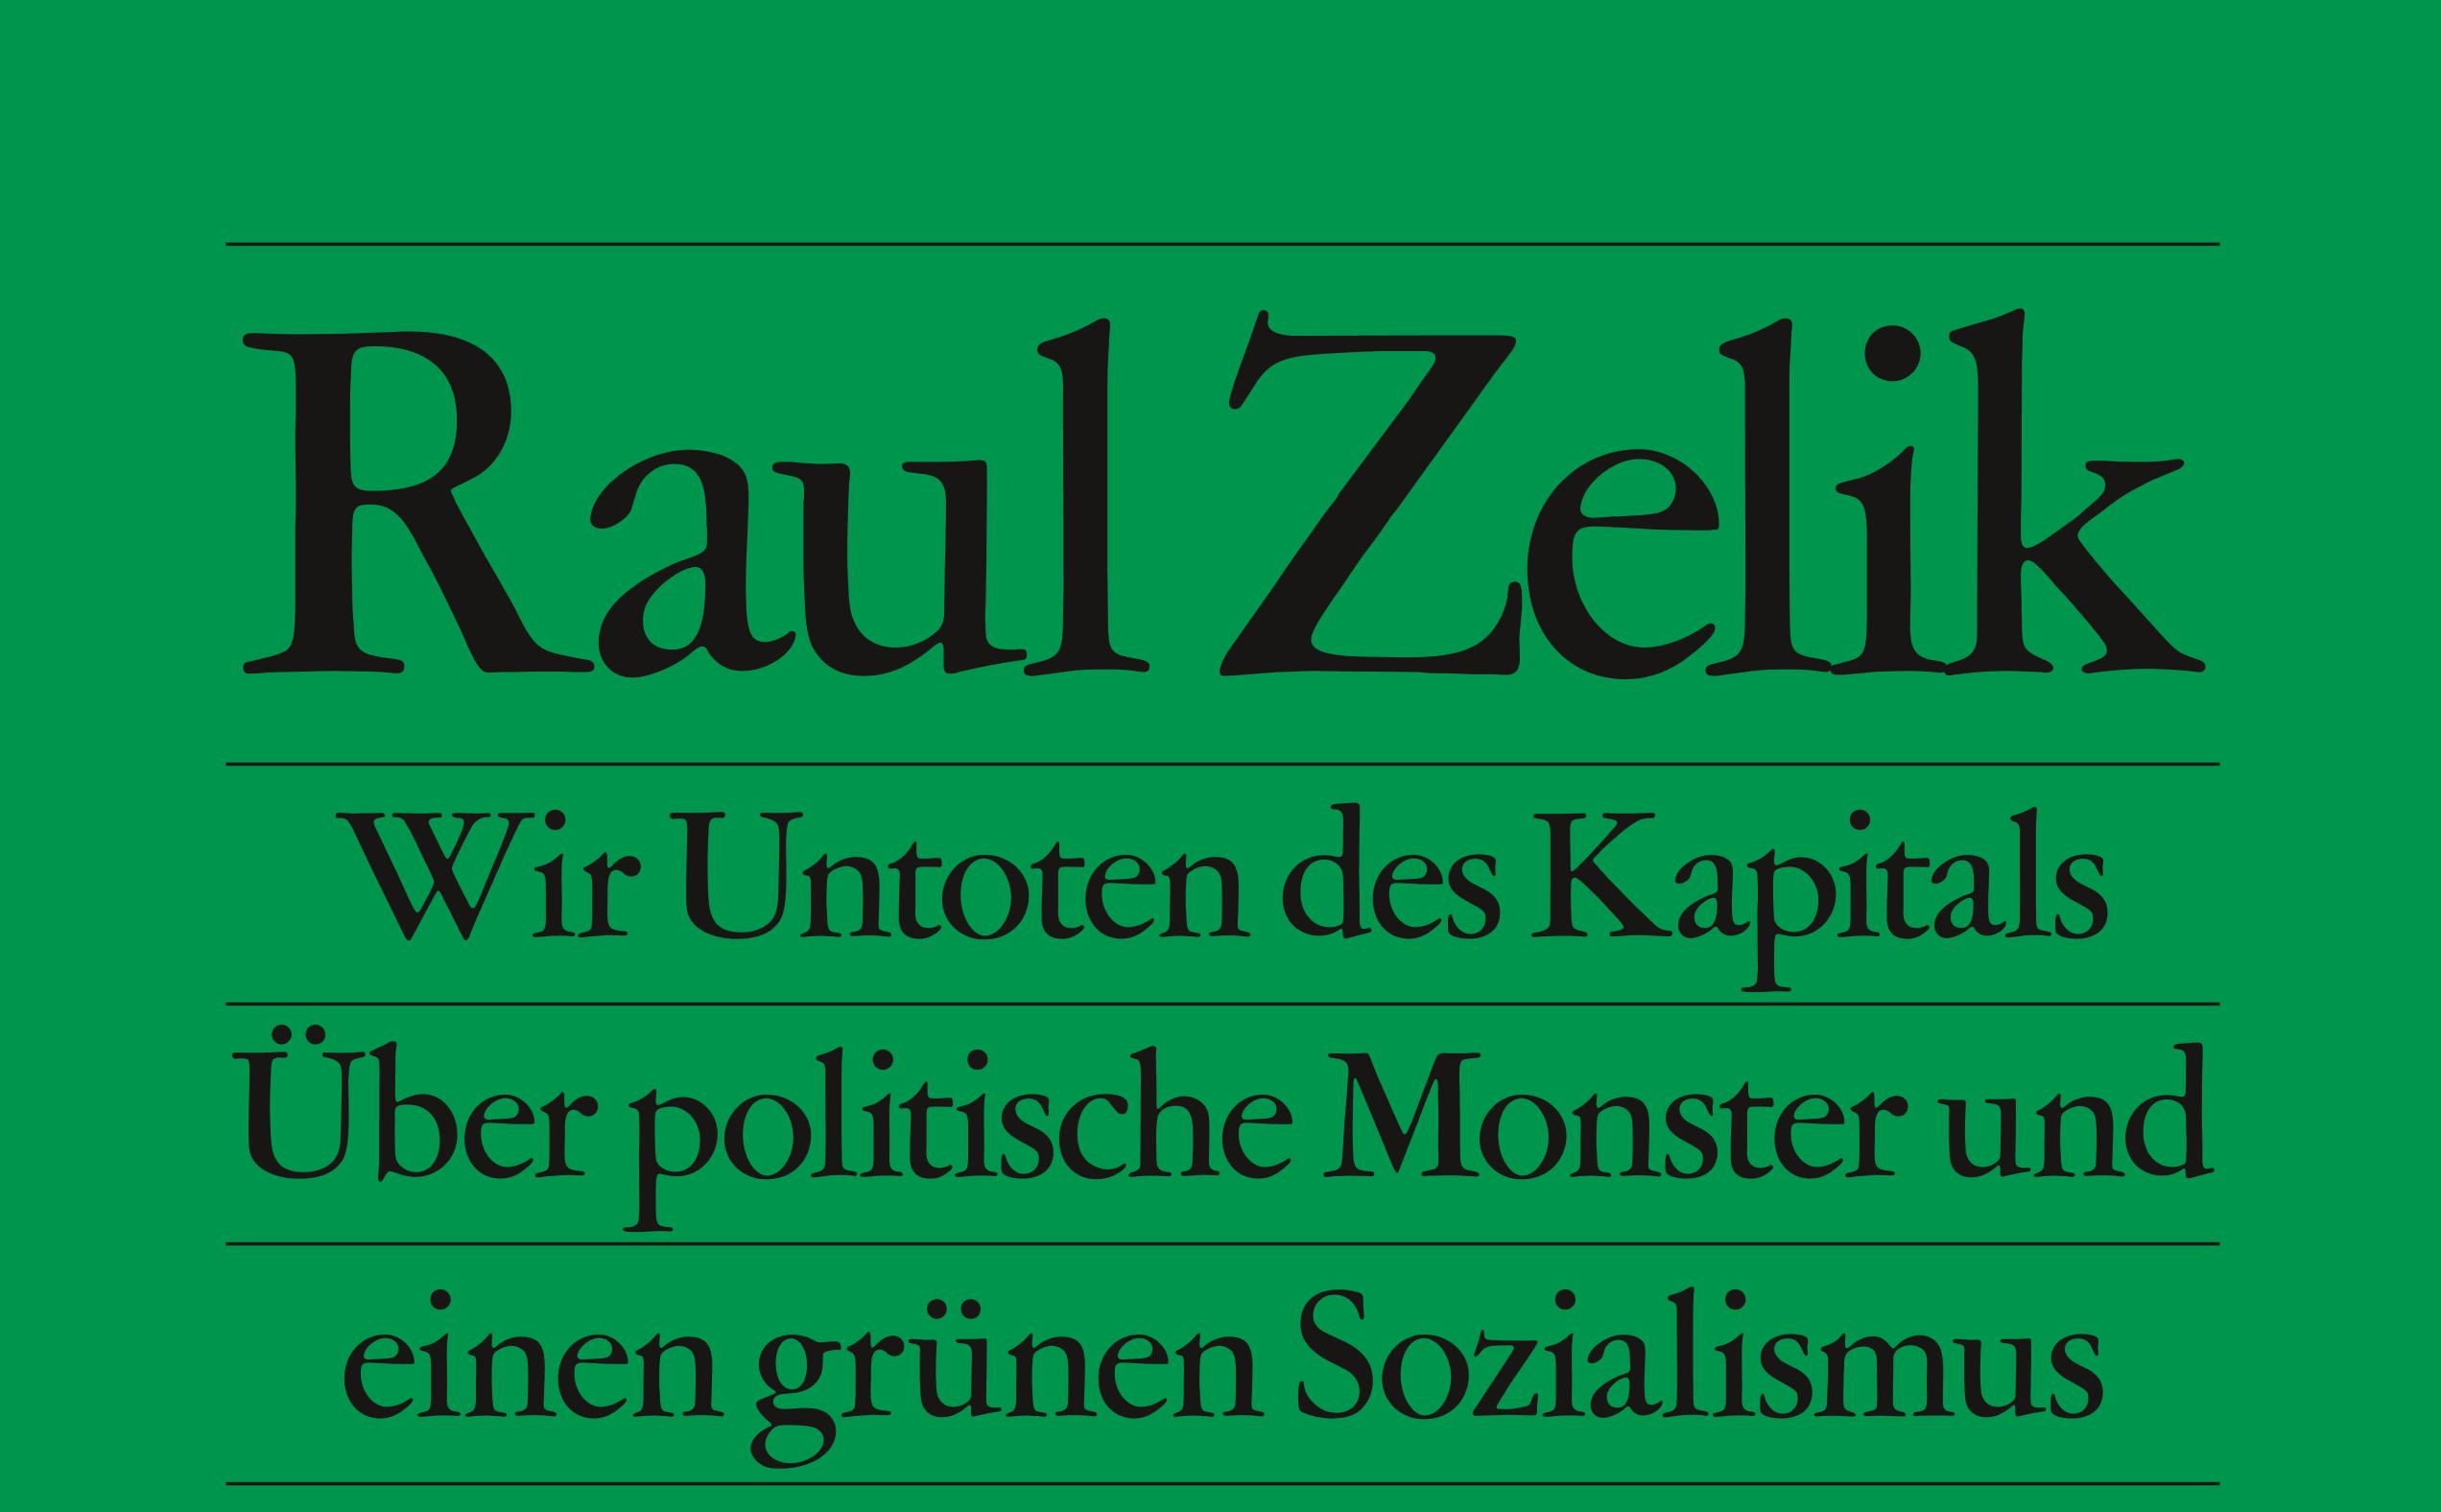 Grüner Sozialismus statt grüner Kapitalismus - ein Gespräch mit Raul Zelik